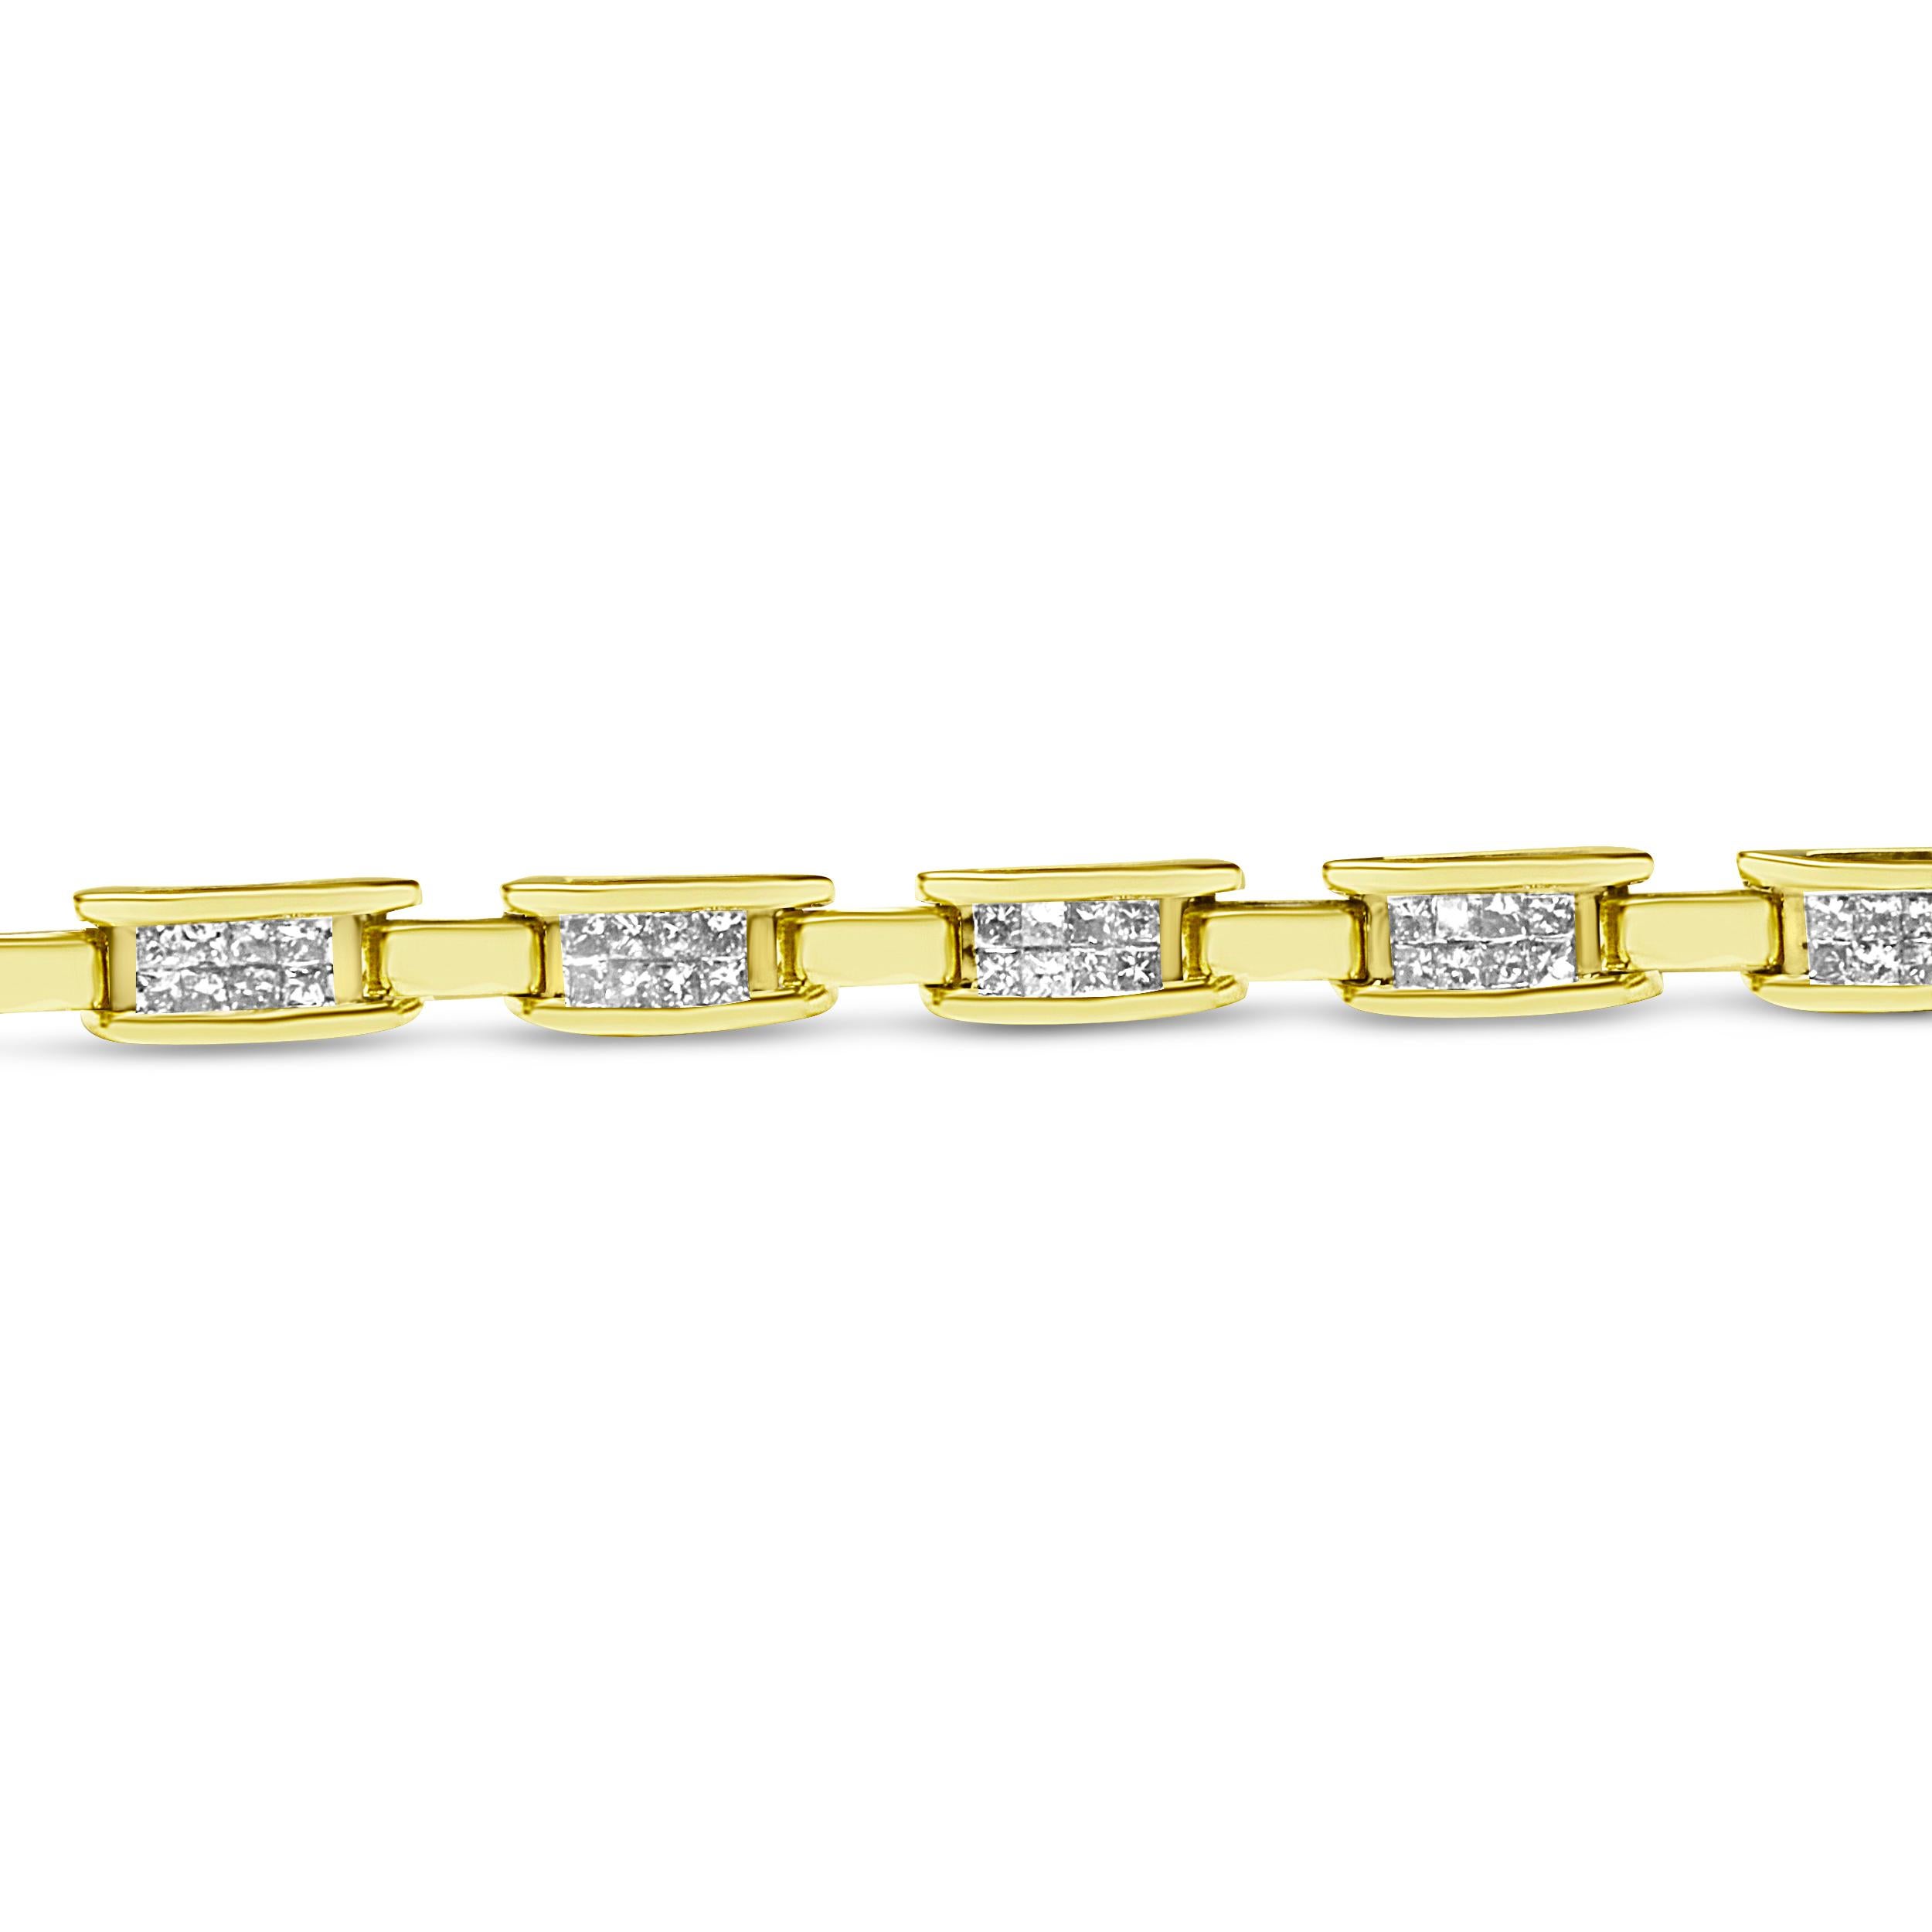 Contemporary 10K Yellow Gold 2.0 Carat Princess Cut Diamond Rectangular Link Bracelet For Sale